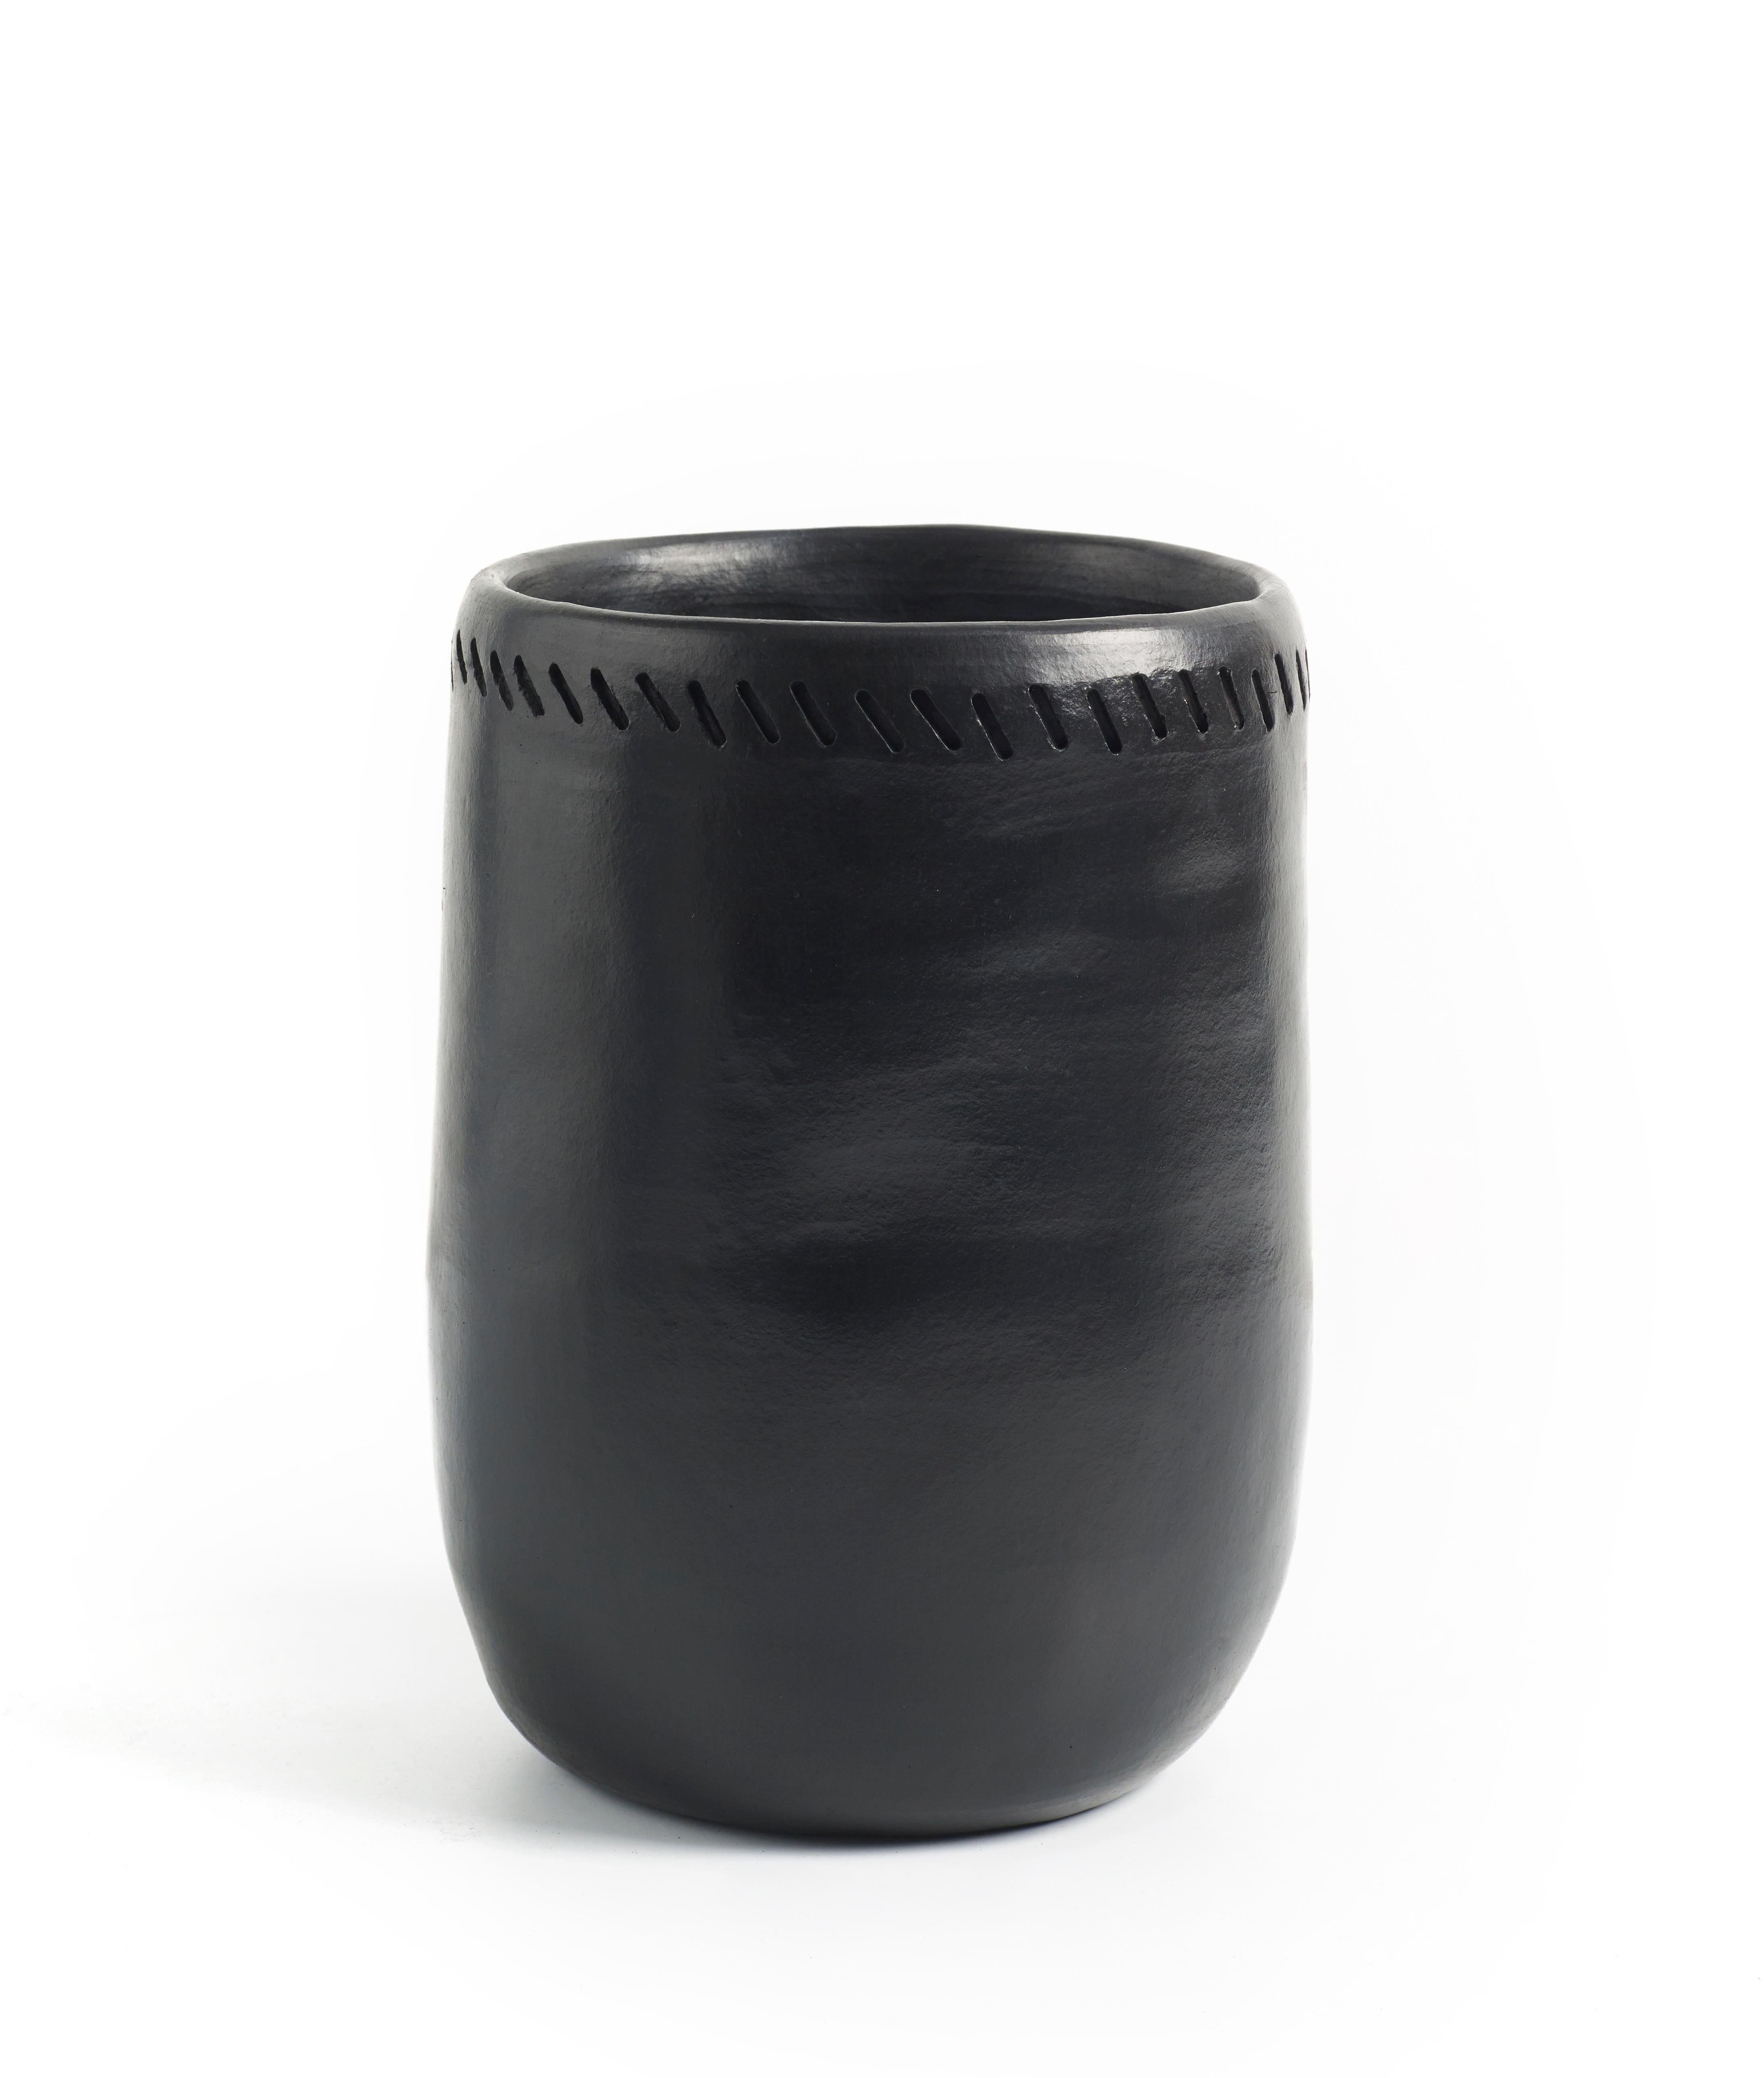 Vase 1 barro esstisch von Sebastian Herkner
MATERIAL: hitzebeständige schwarze Keramik. 
Technik: Glasiert. Im Ofen gegart und mit Halbedelsteinen poliert. 
Abmessungen: Durchmesser 12 cm x H 20 cm 
Erhältlich in Größe Large. 

Diese Vase